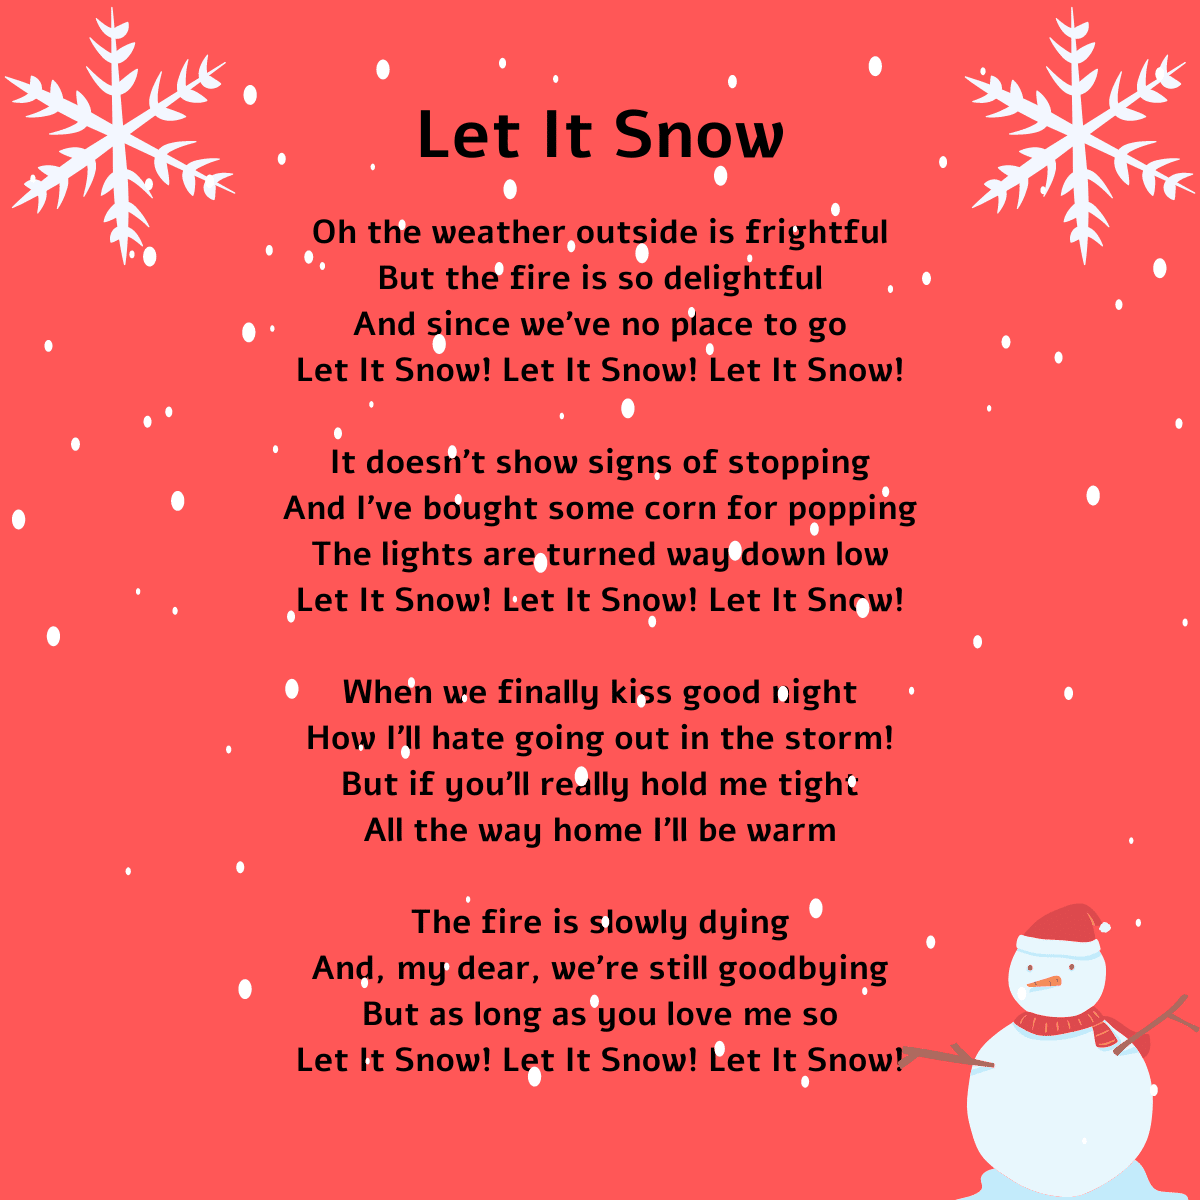 Let It Snow lyrics